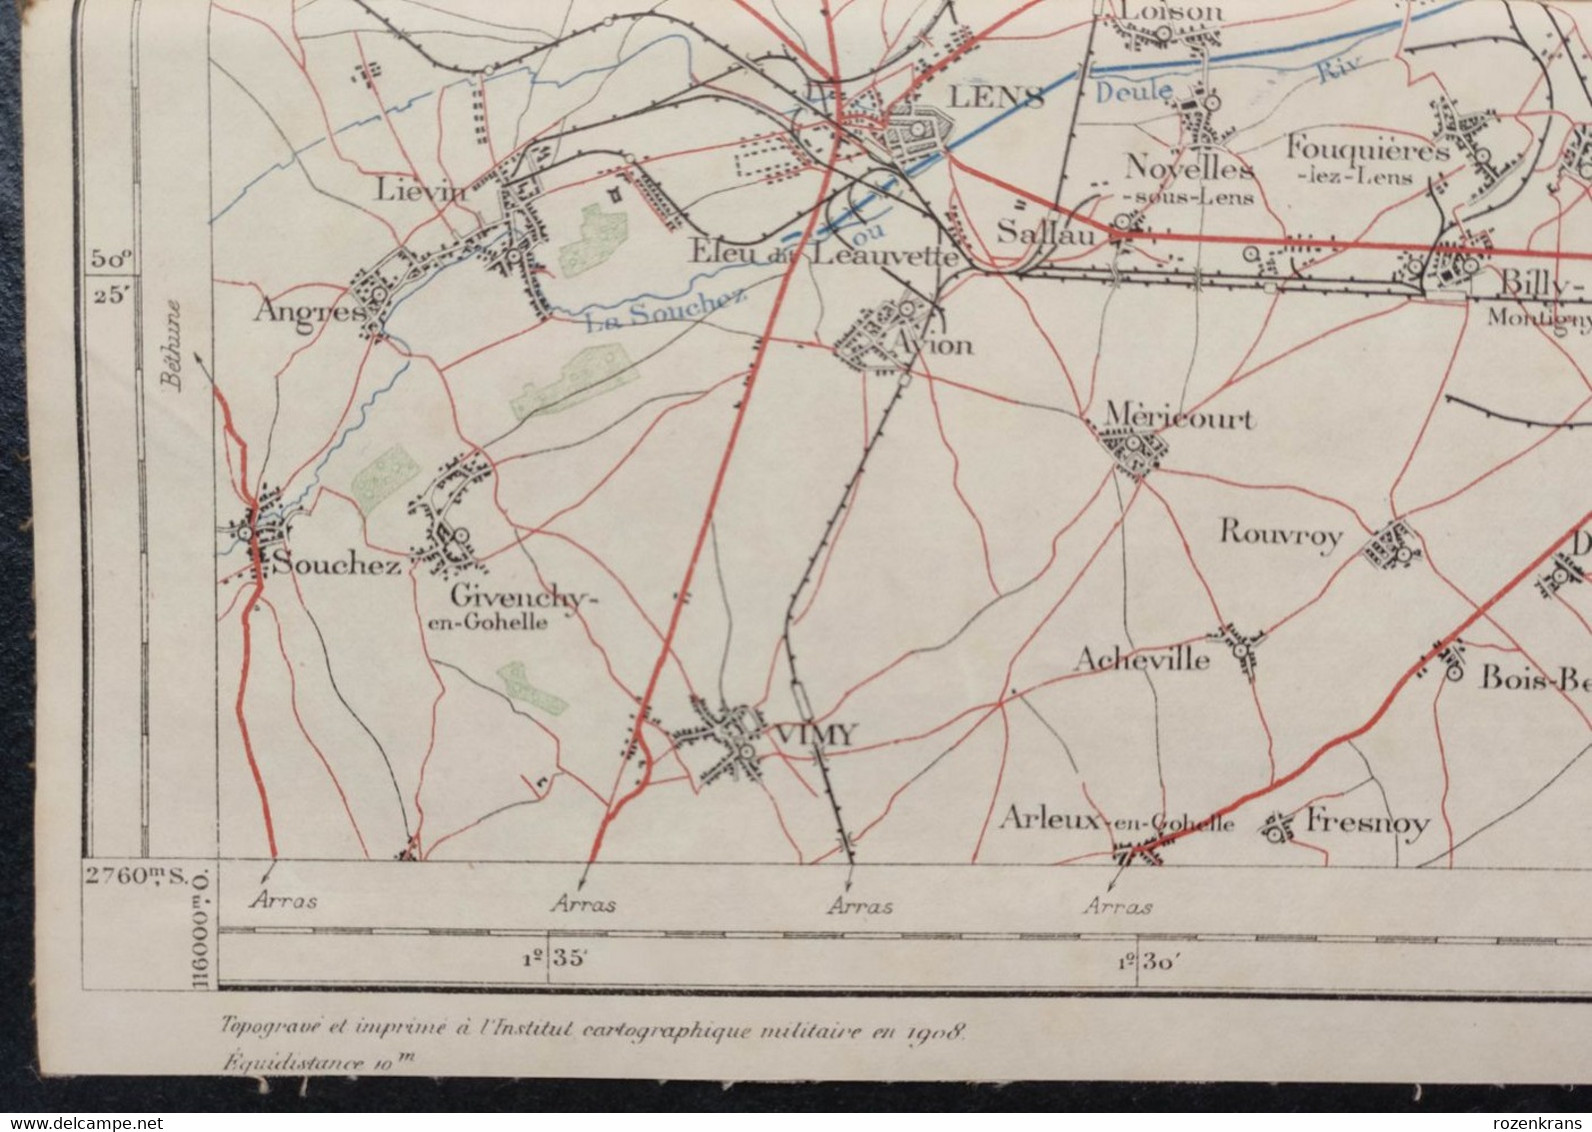 Carte topographique toilée militaire STAFKAART 1912 Tournai Roubaix Lille Armentieres Lens Douai